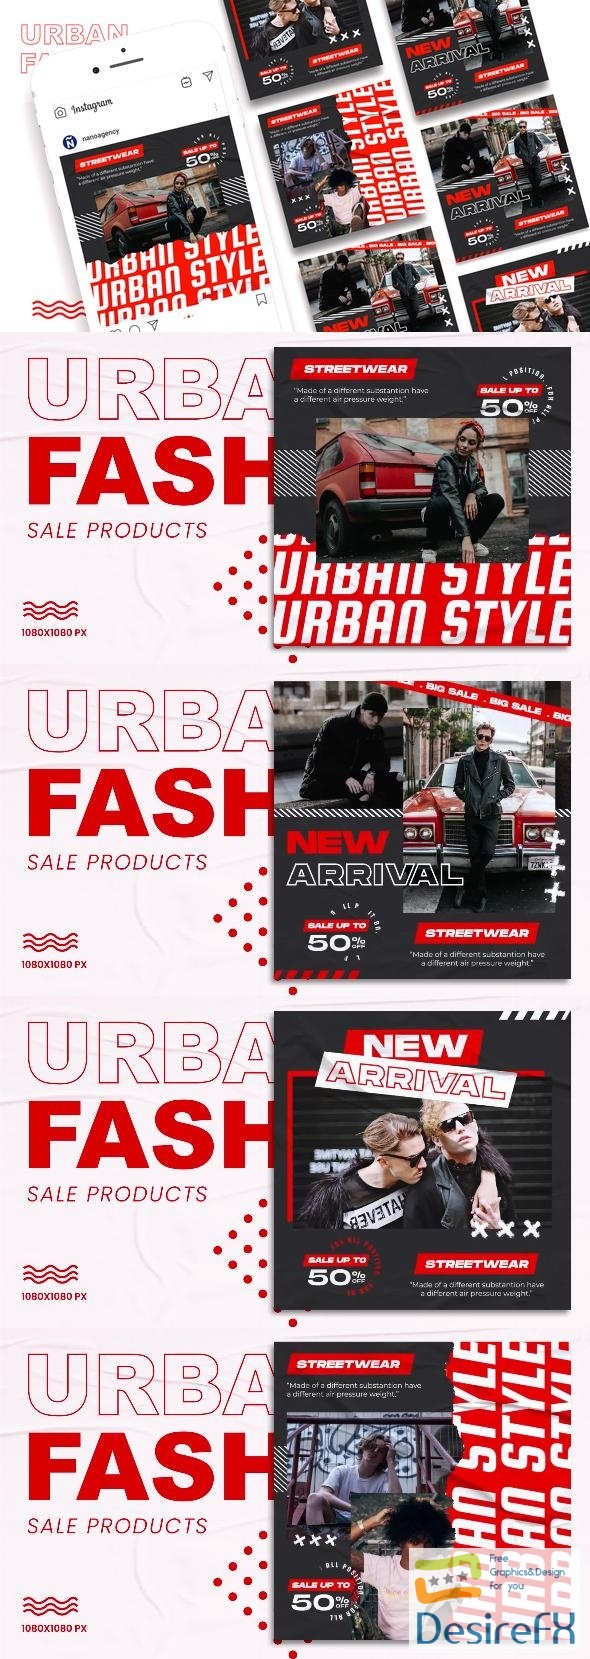 VideoHive Urban Streetwear Instagram Post 43538957